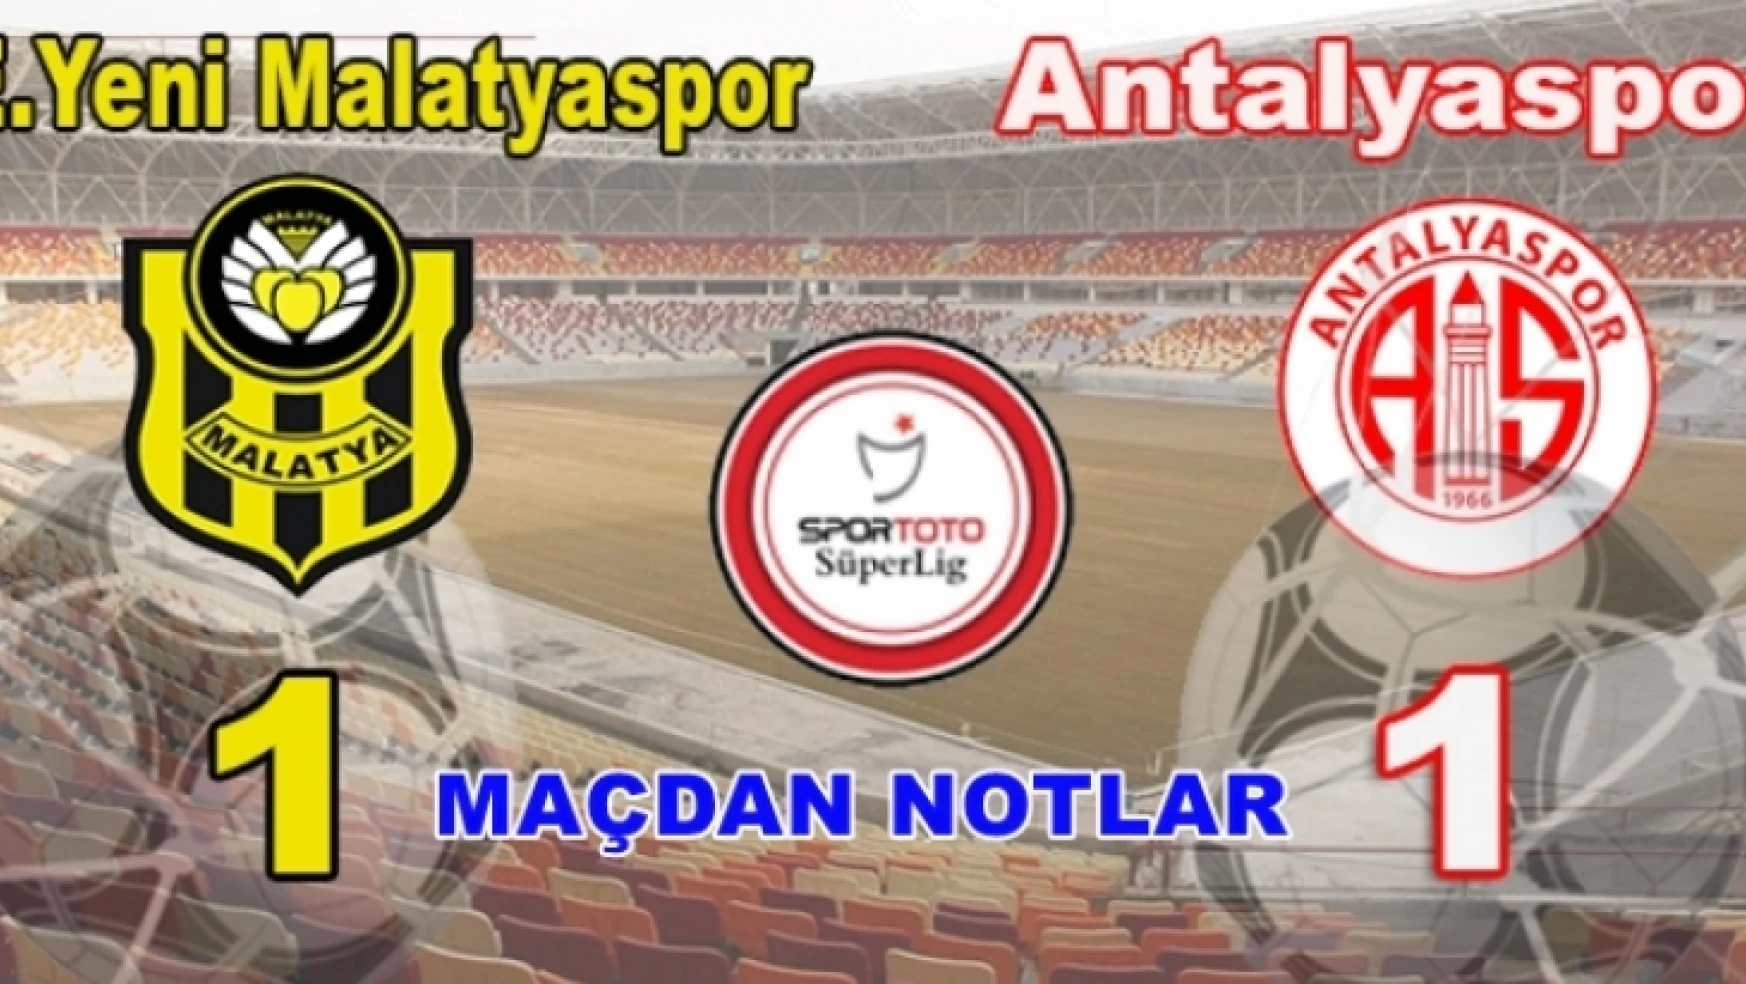 Yeni Malatyaspor-Antalya Maçı Notları